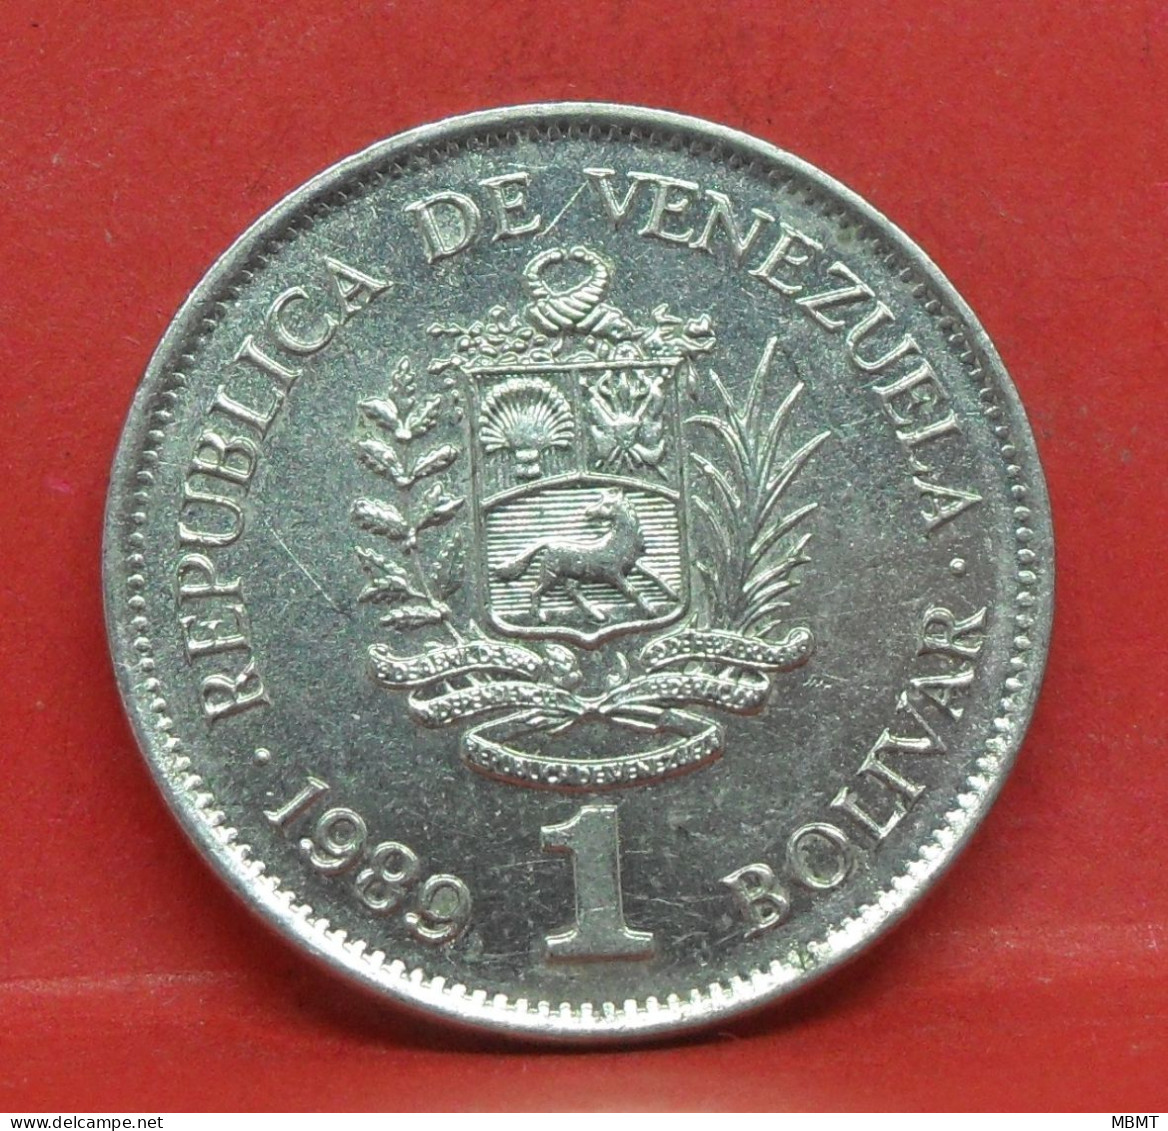 1 Bolivar 1989 - TB - Pièce De Monnaie Venezuela - Article N°5539 - Venezuela